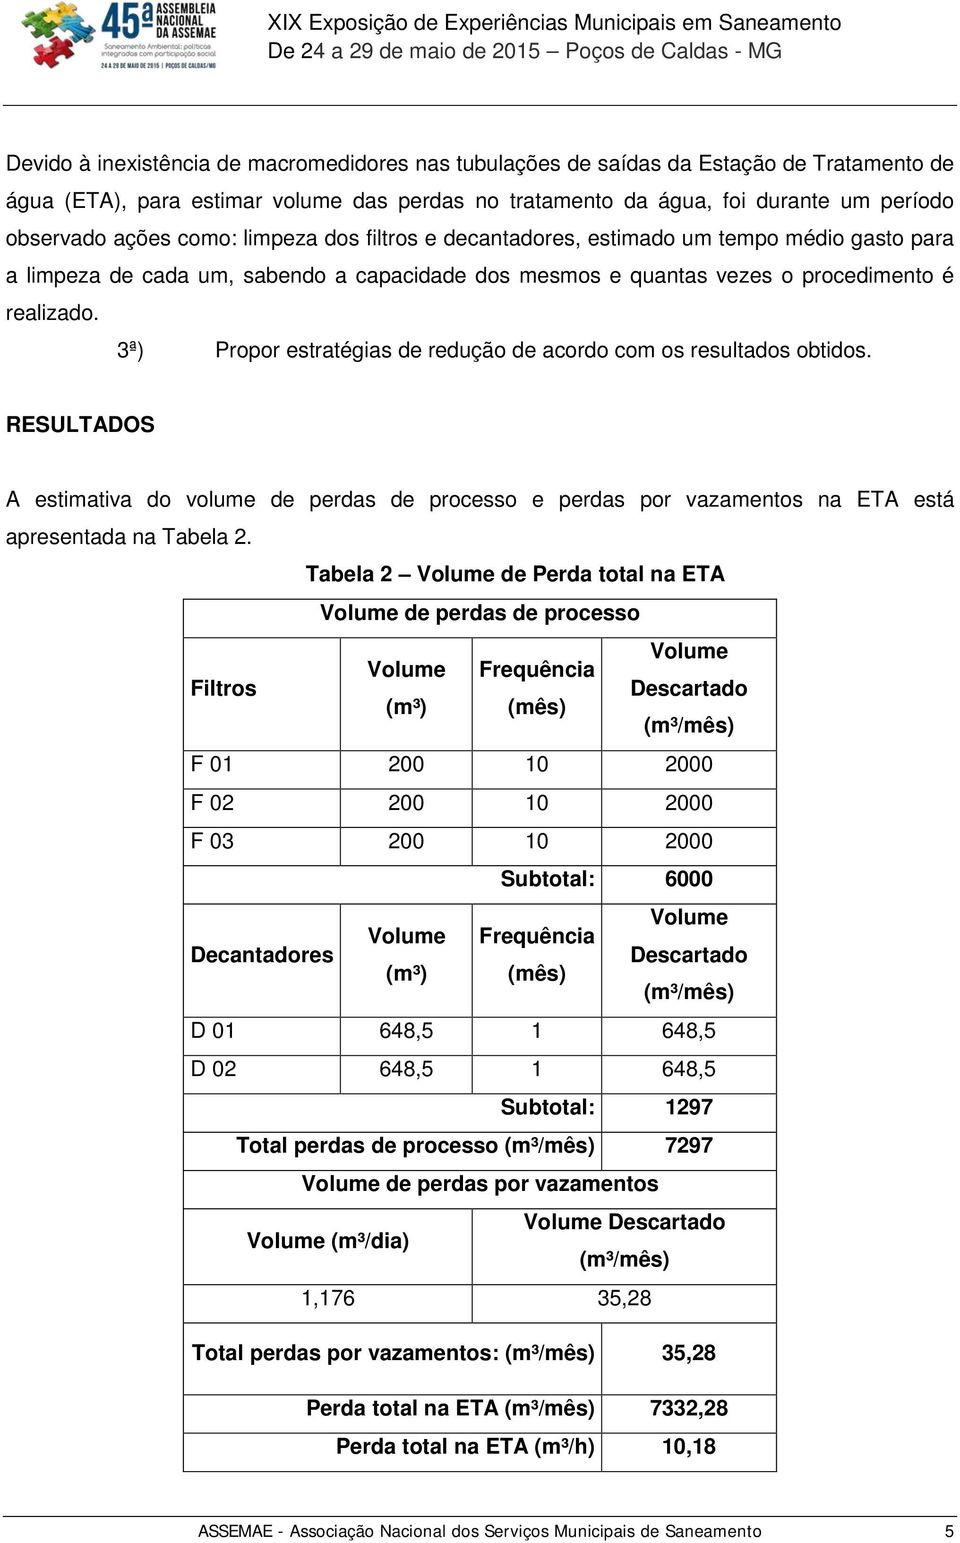 3ª) Propor estratégias de redução de acordo com os resultados obtidos. RESULTADOS A estimativa do volume de perdas de processo e perdas por vazamentos na ETA está apresentada na Tabela 2.